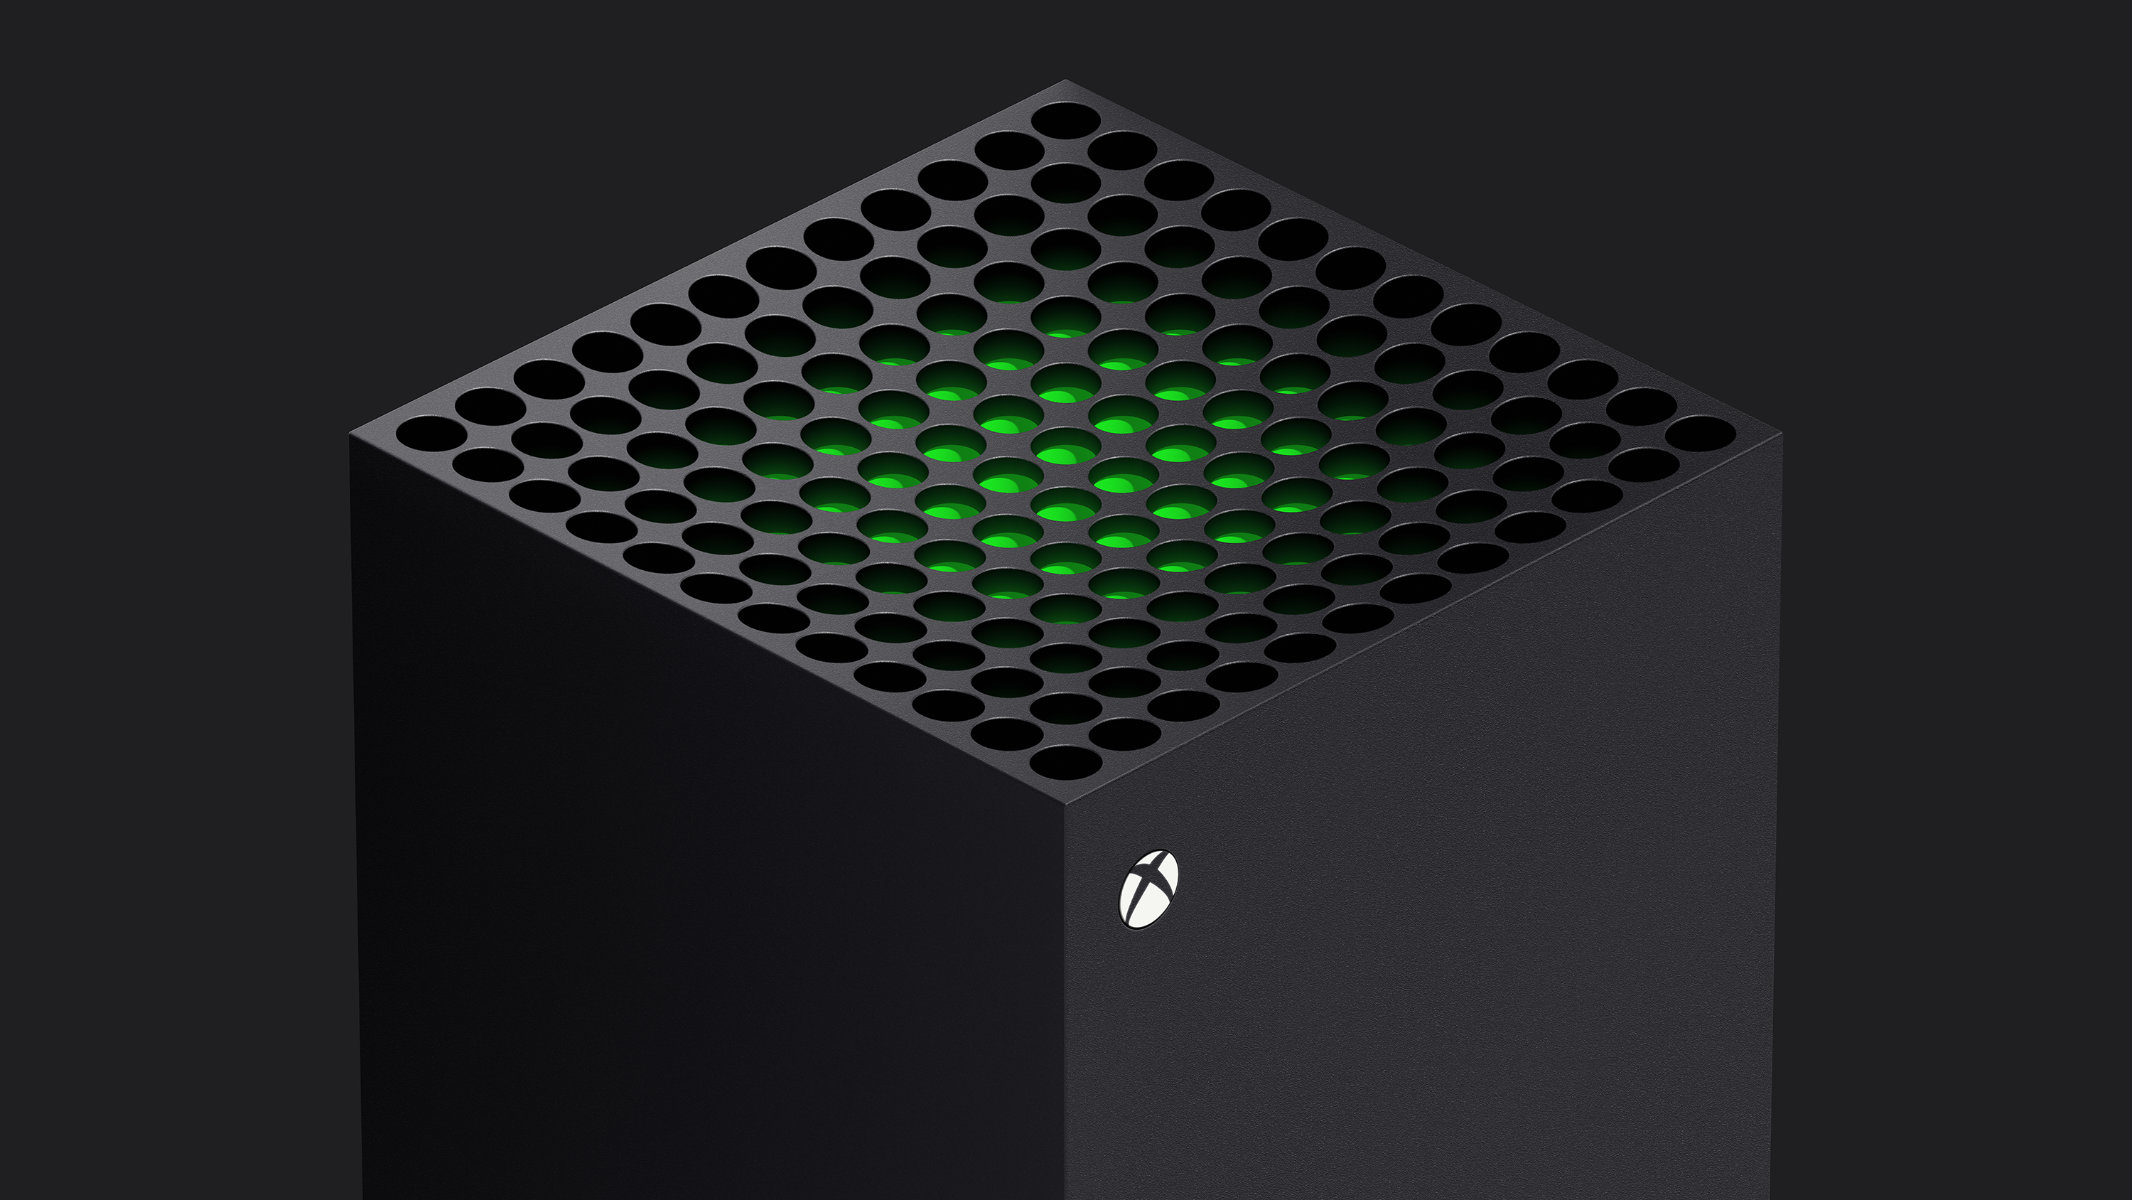 Xbox Series S et Series X : comment gérer au mieux l'espace de